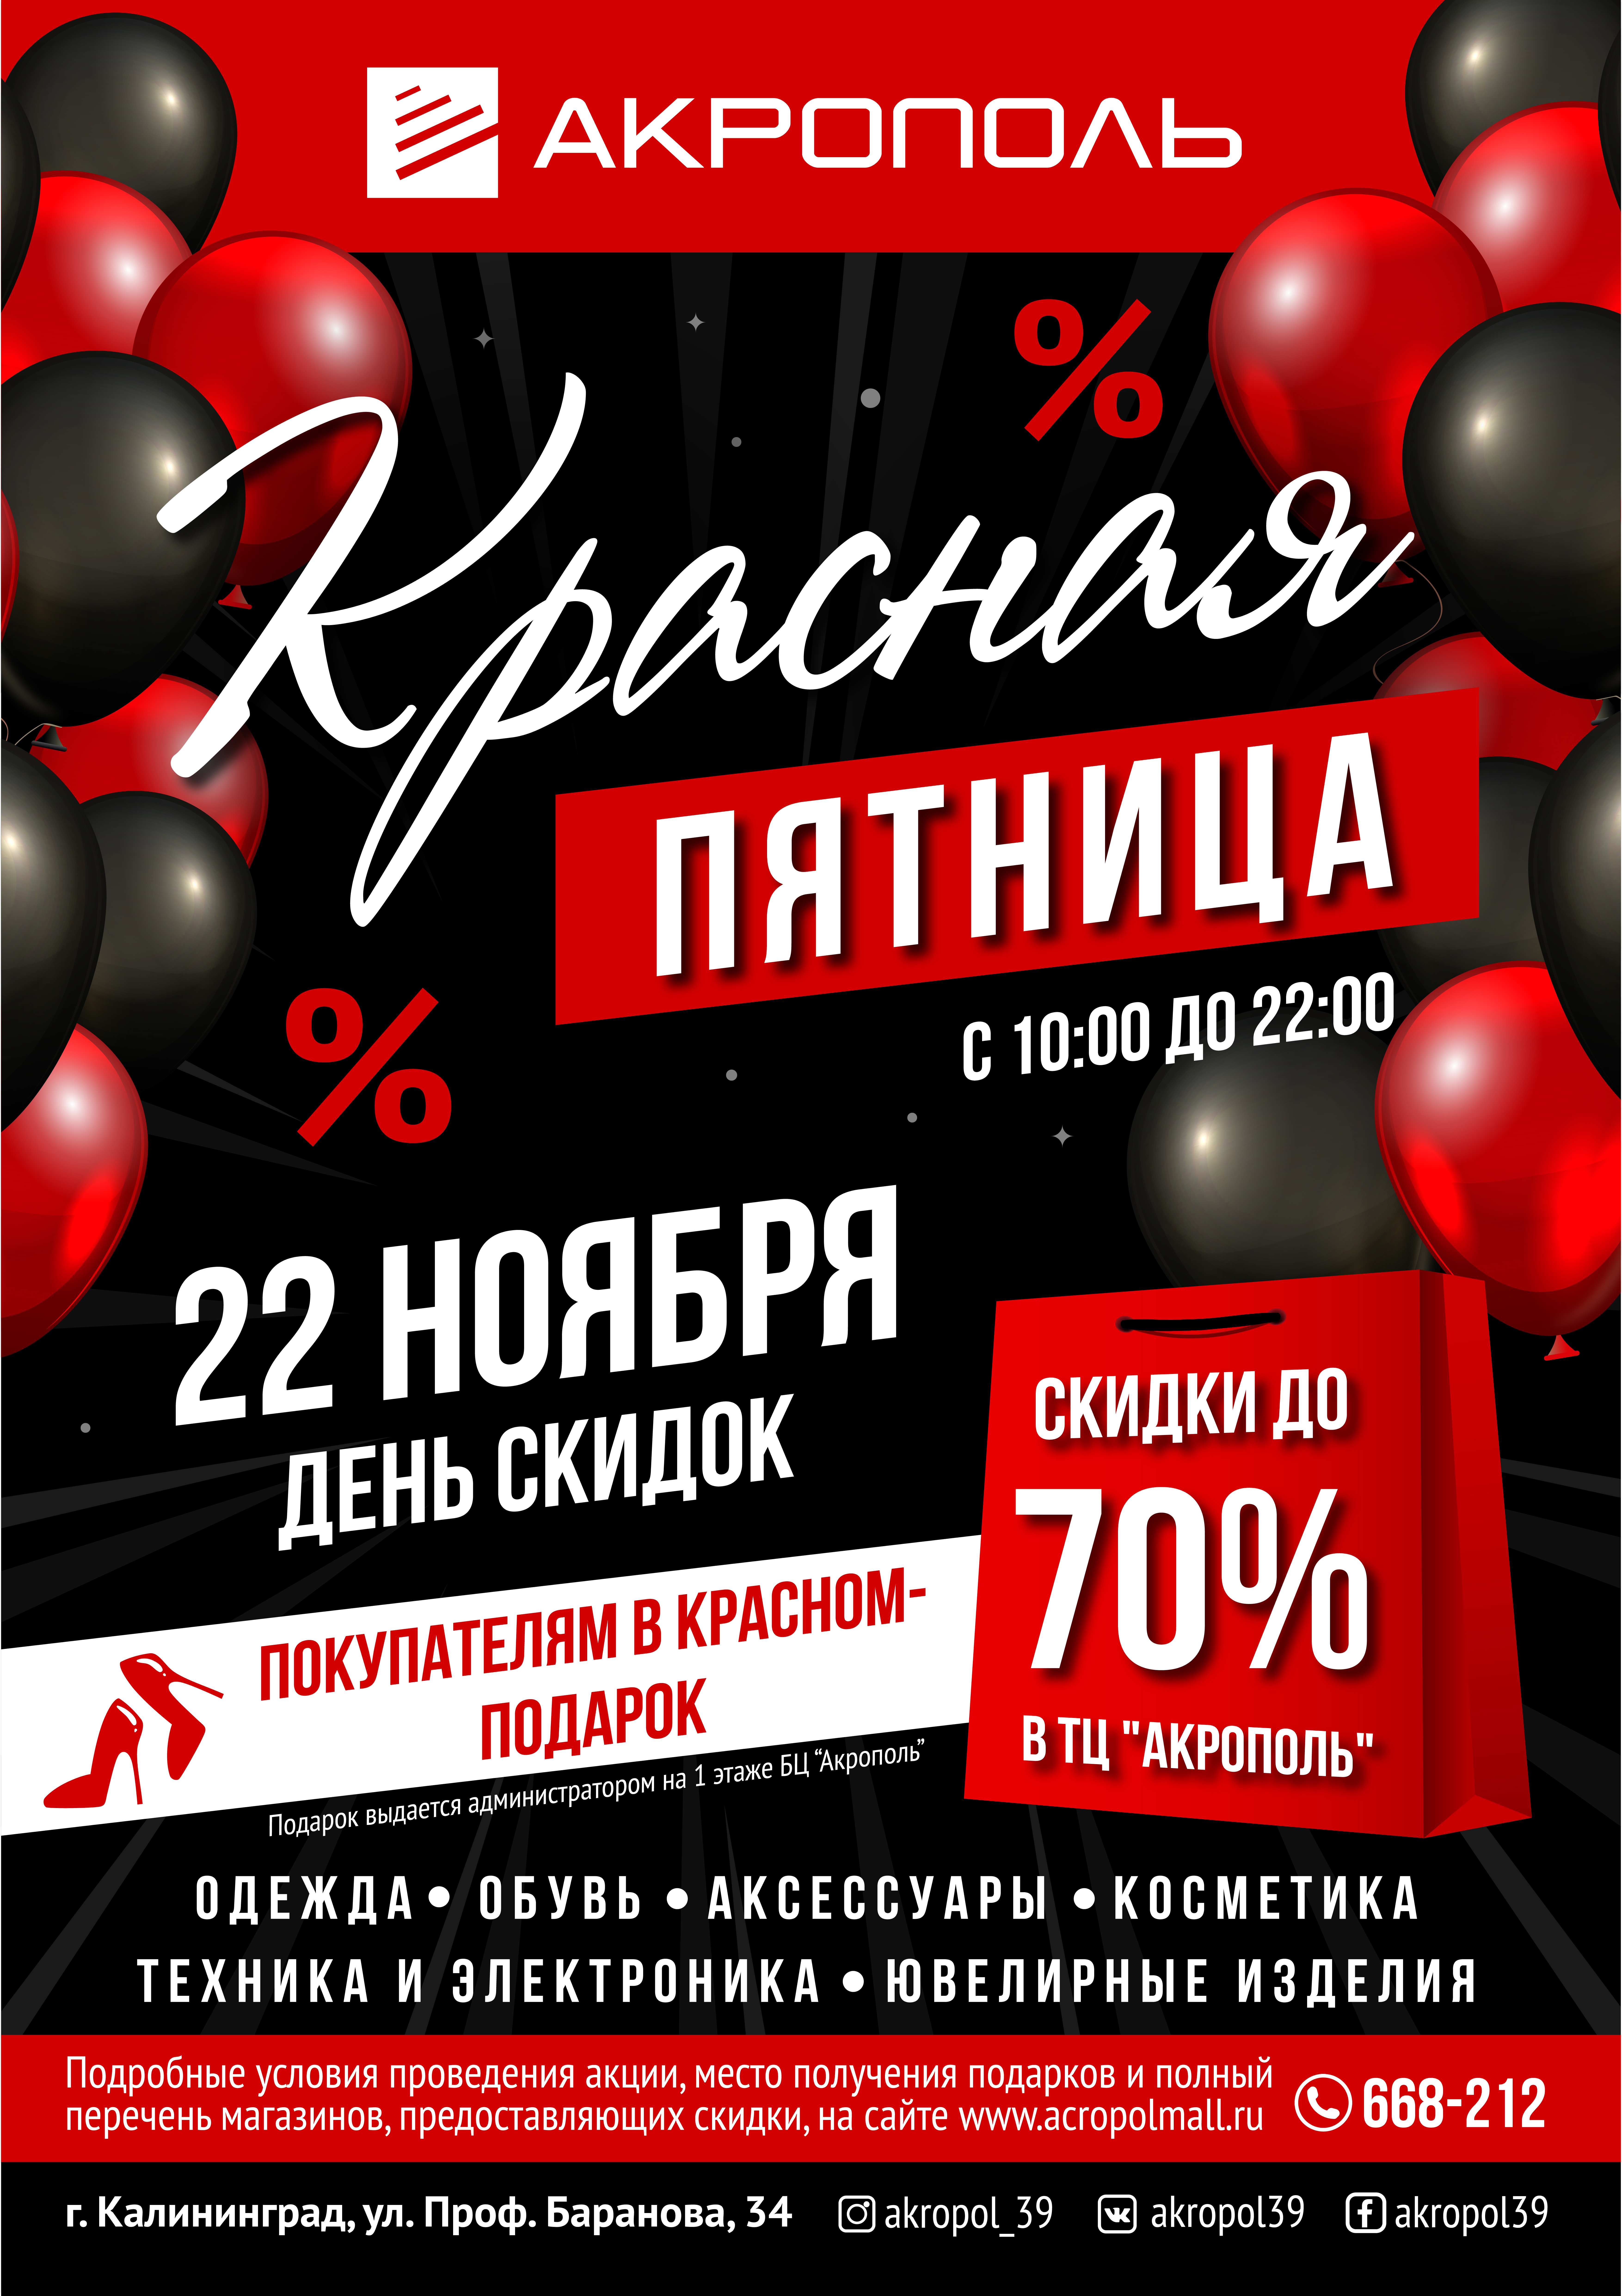 A1_krasnaya_pyatnitsa_2019-01